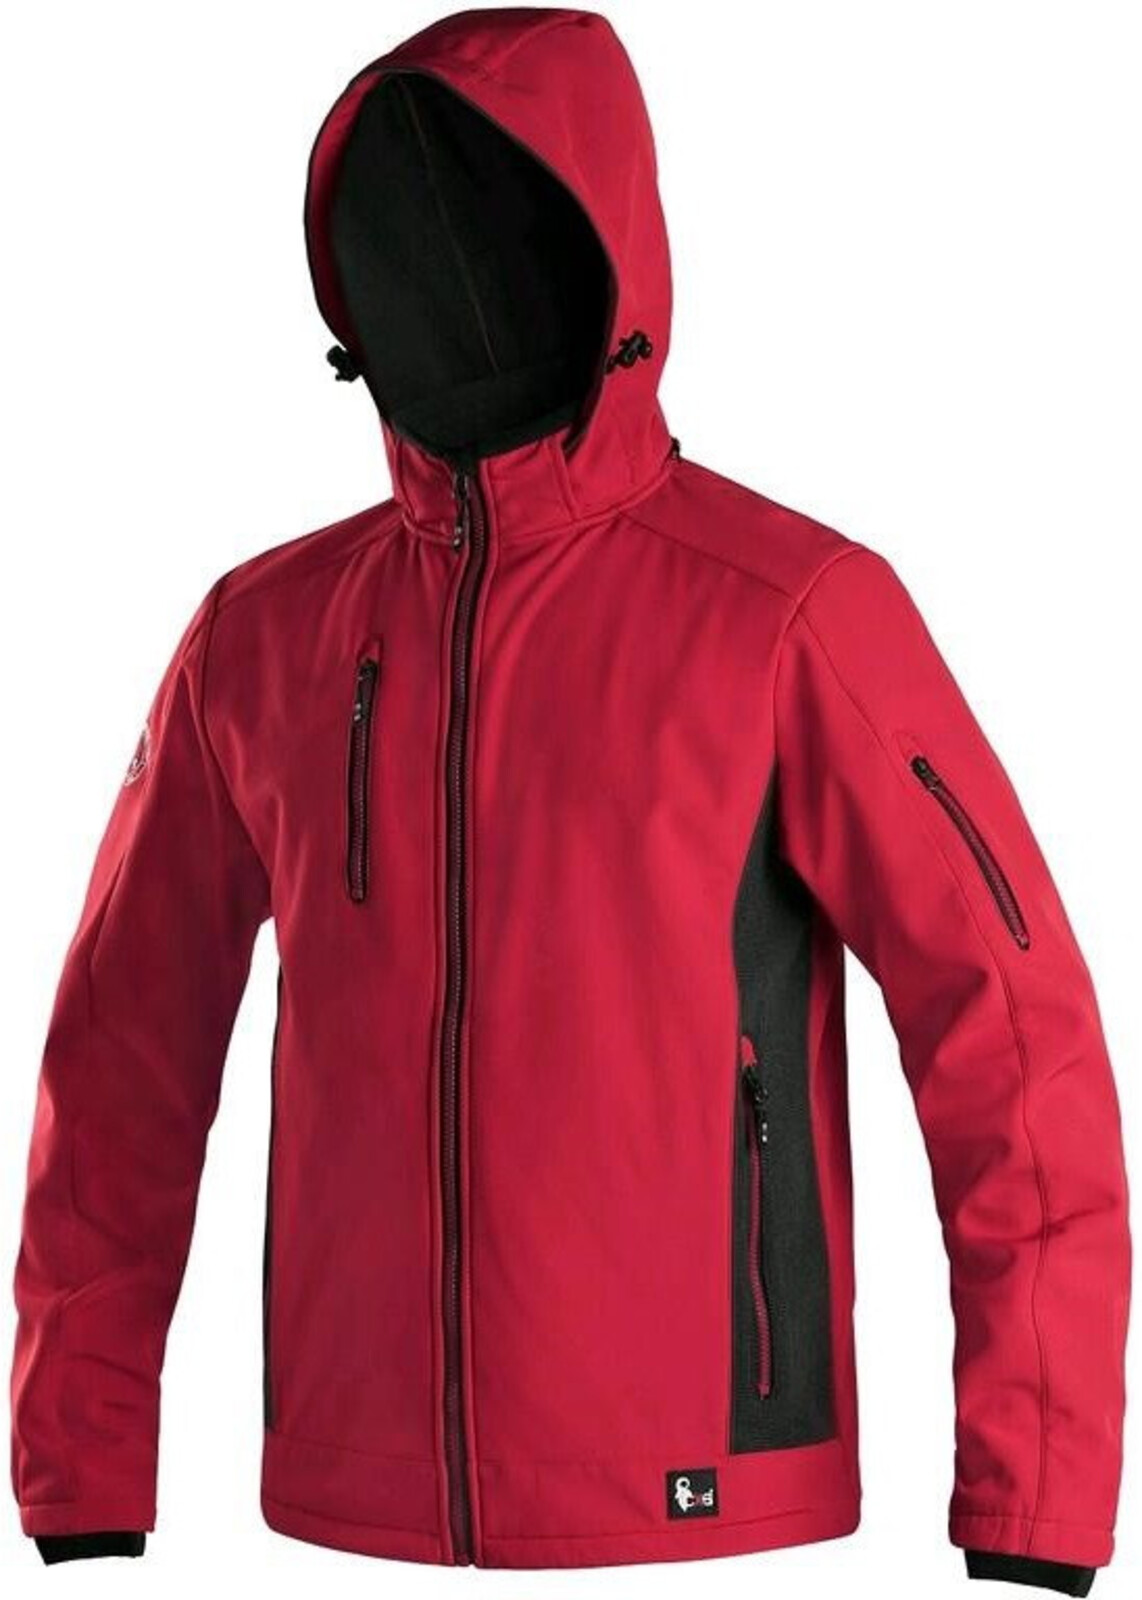 Pánska softshellová bunda CXS Durham - veľkosť: M, farba: červená/čierna